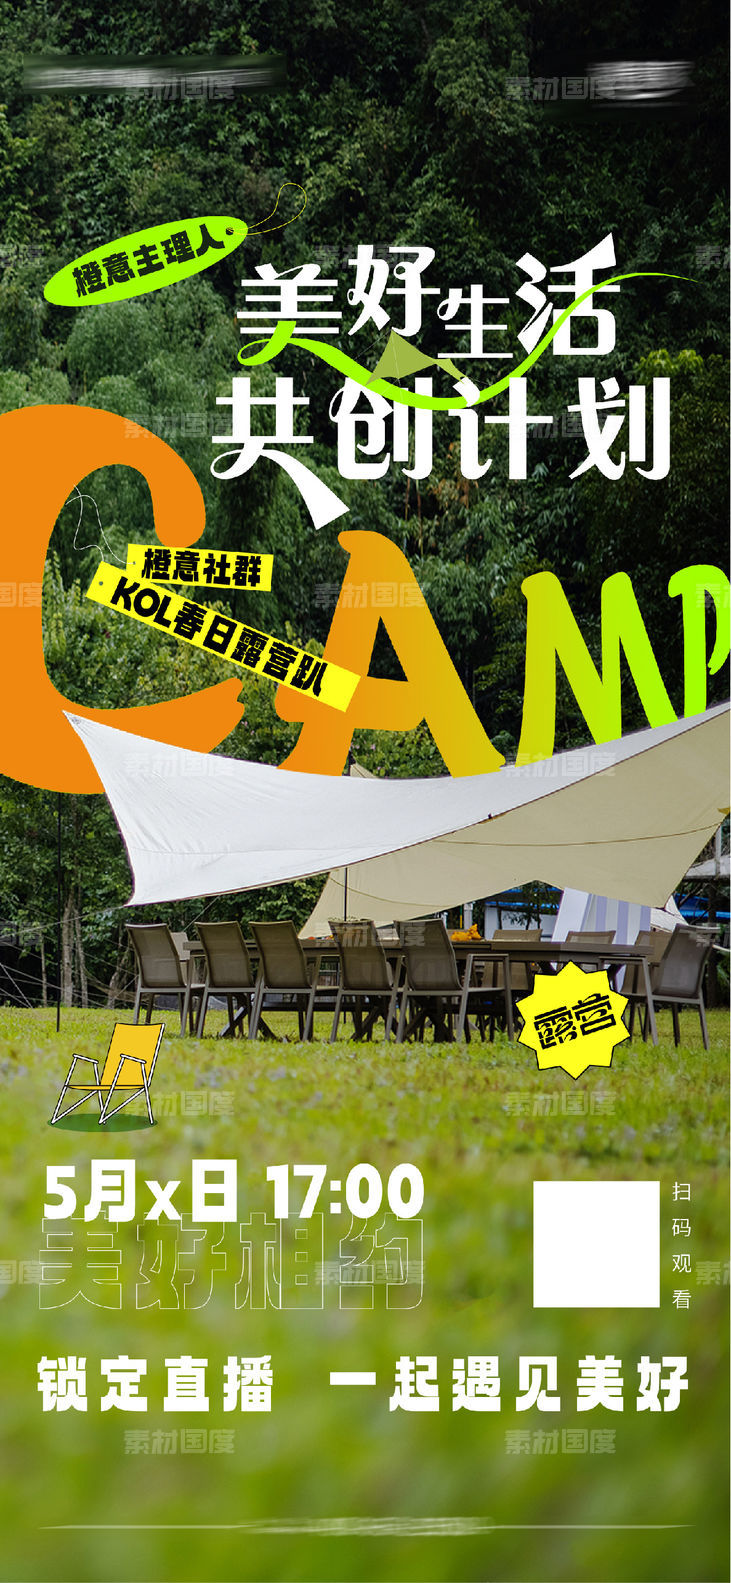 露营帐篷节音乐节春日出游嘉年华生活节